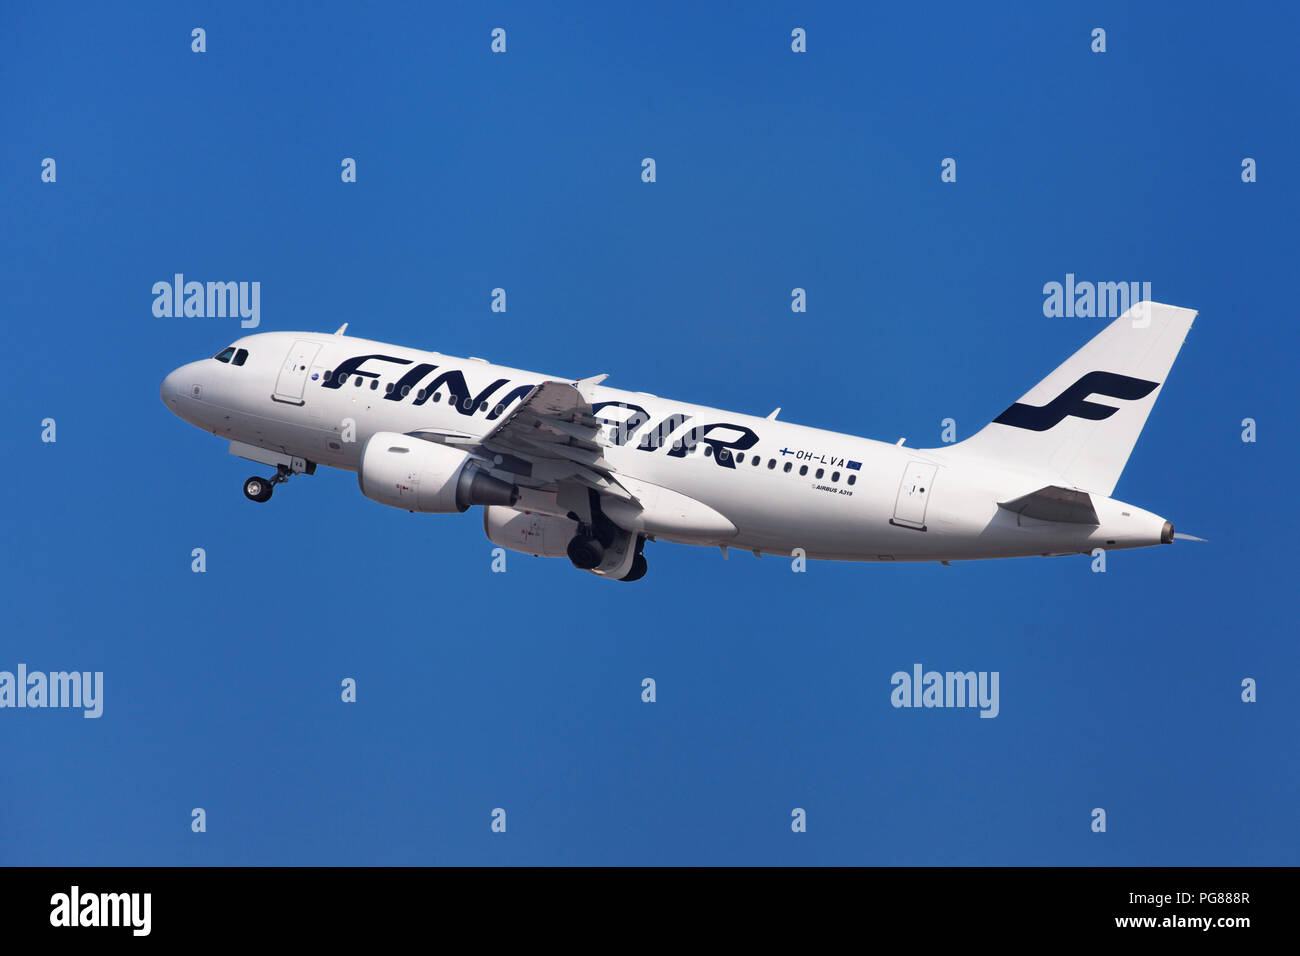 Barcelone, Espagne - 21 août 2018 : Finnair Airbus A319 qui décolle de l'aéroport El Prat de Barcelone, Espagne. Banque D'Images